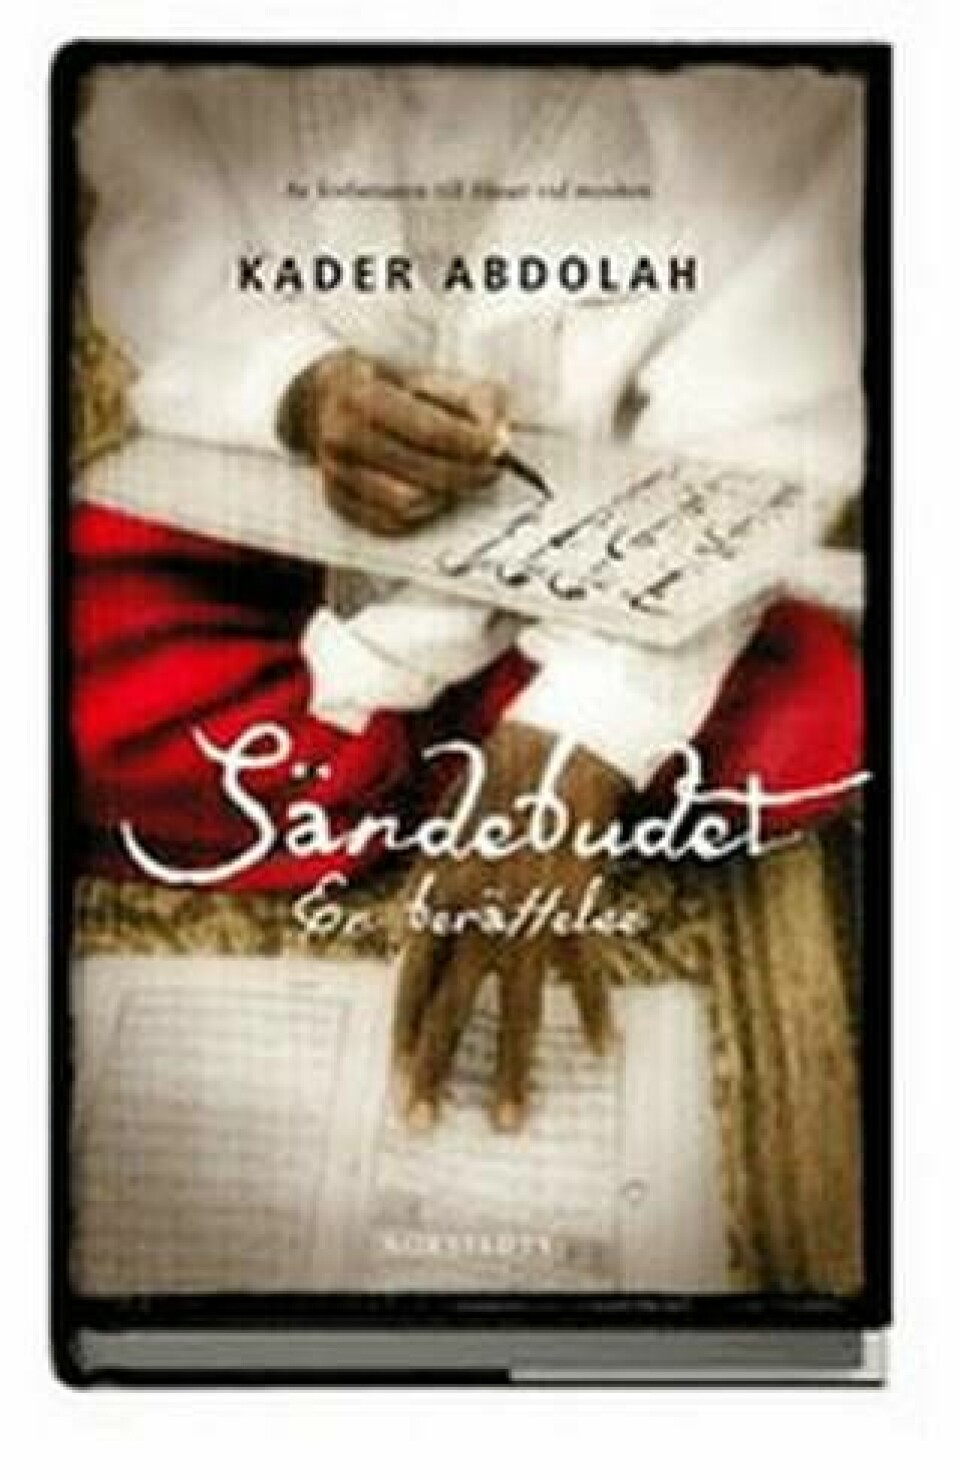 Sändebudet av Kader Abdolah, Norstedts 2010, 278 sidor, cirkapris 160 kronor. Översättning Ingrid Wikén Bonde.